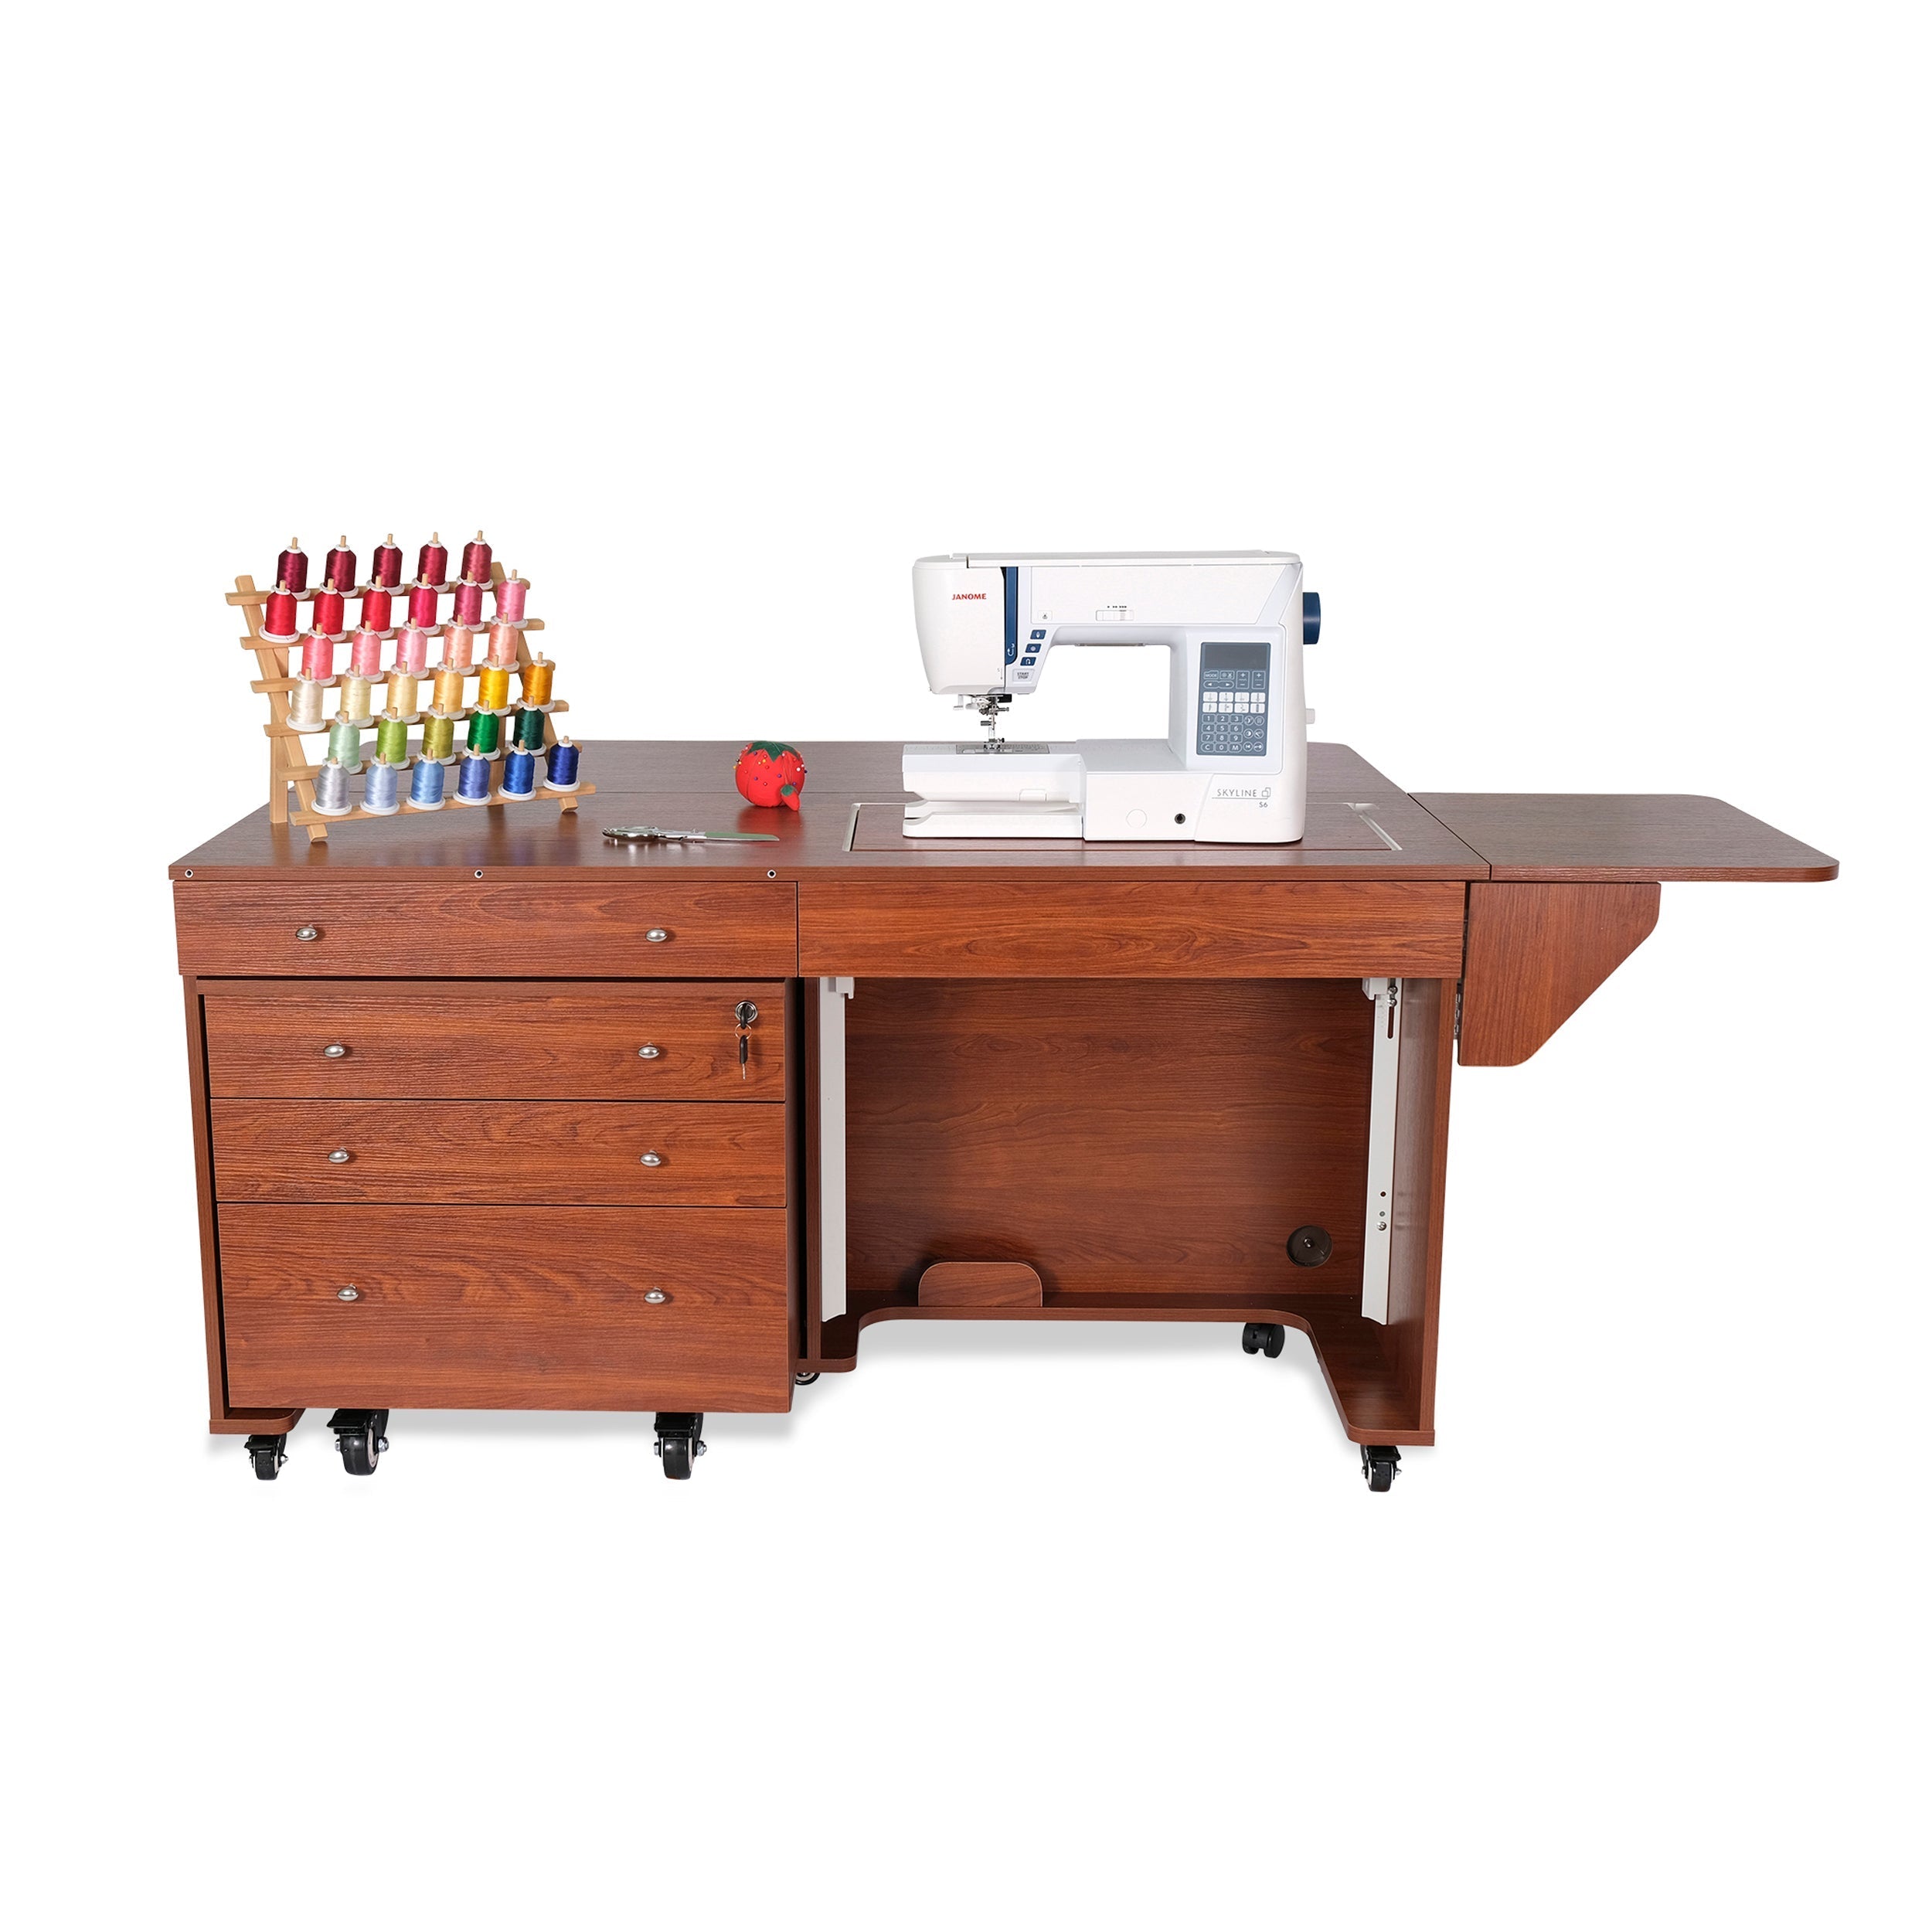 Kangaroo & Joey Sewing Cabinet Teak-Kangaroo Sewing Furniture-My Favorite Quilt Store